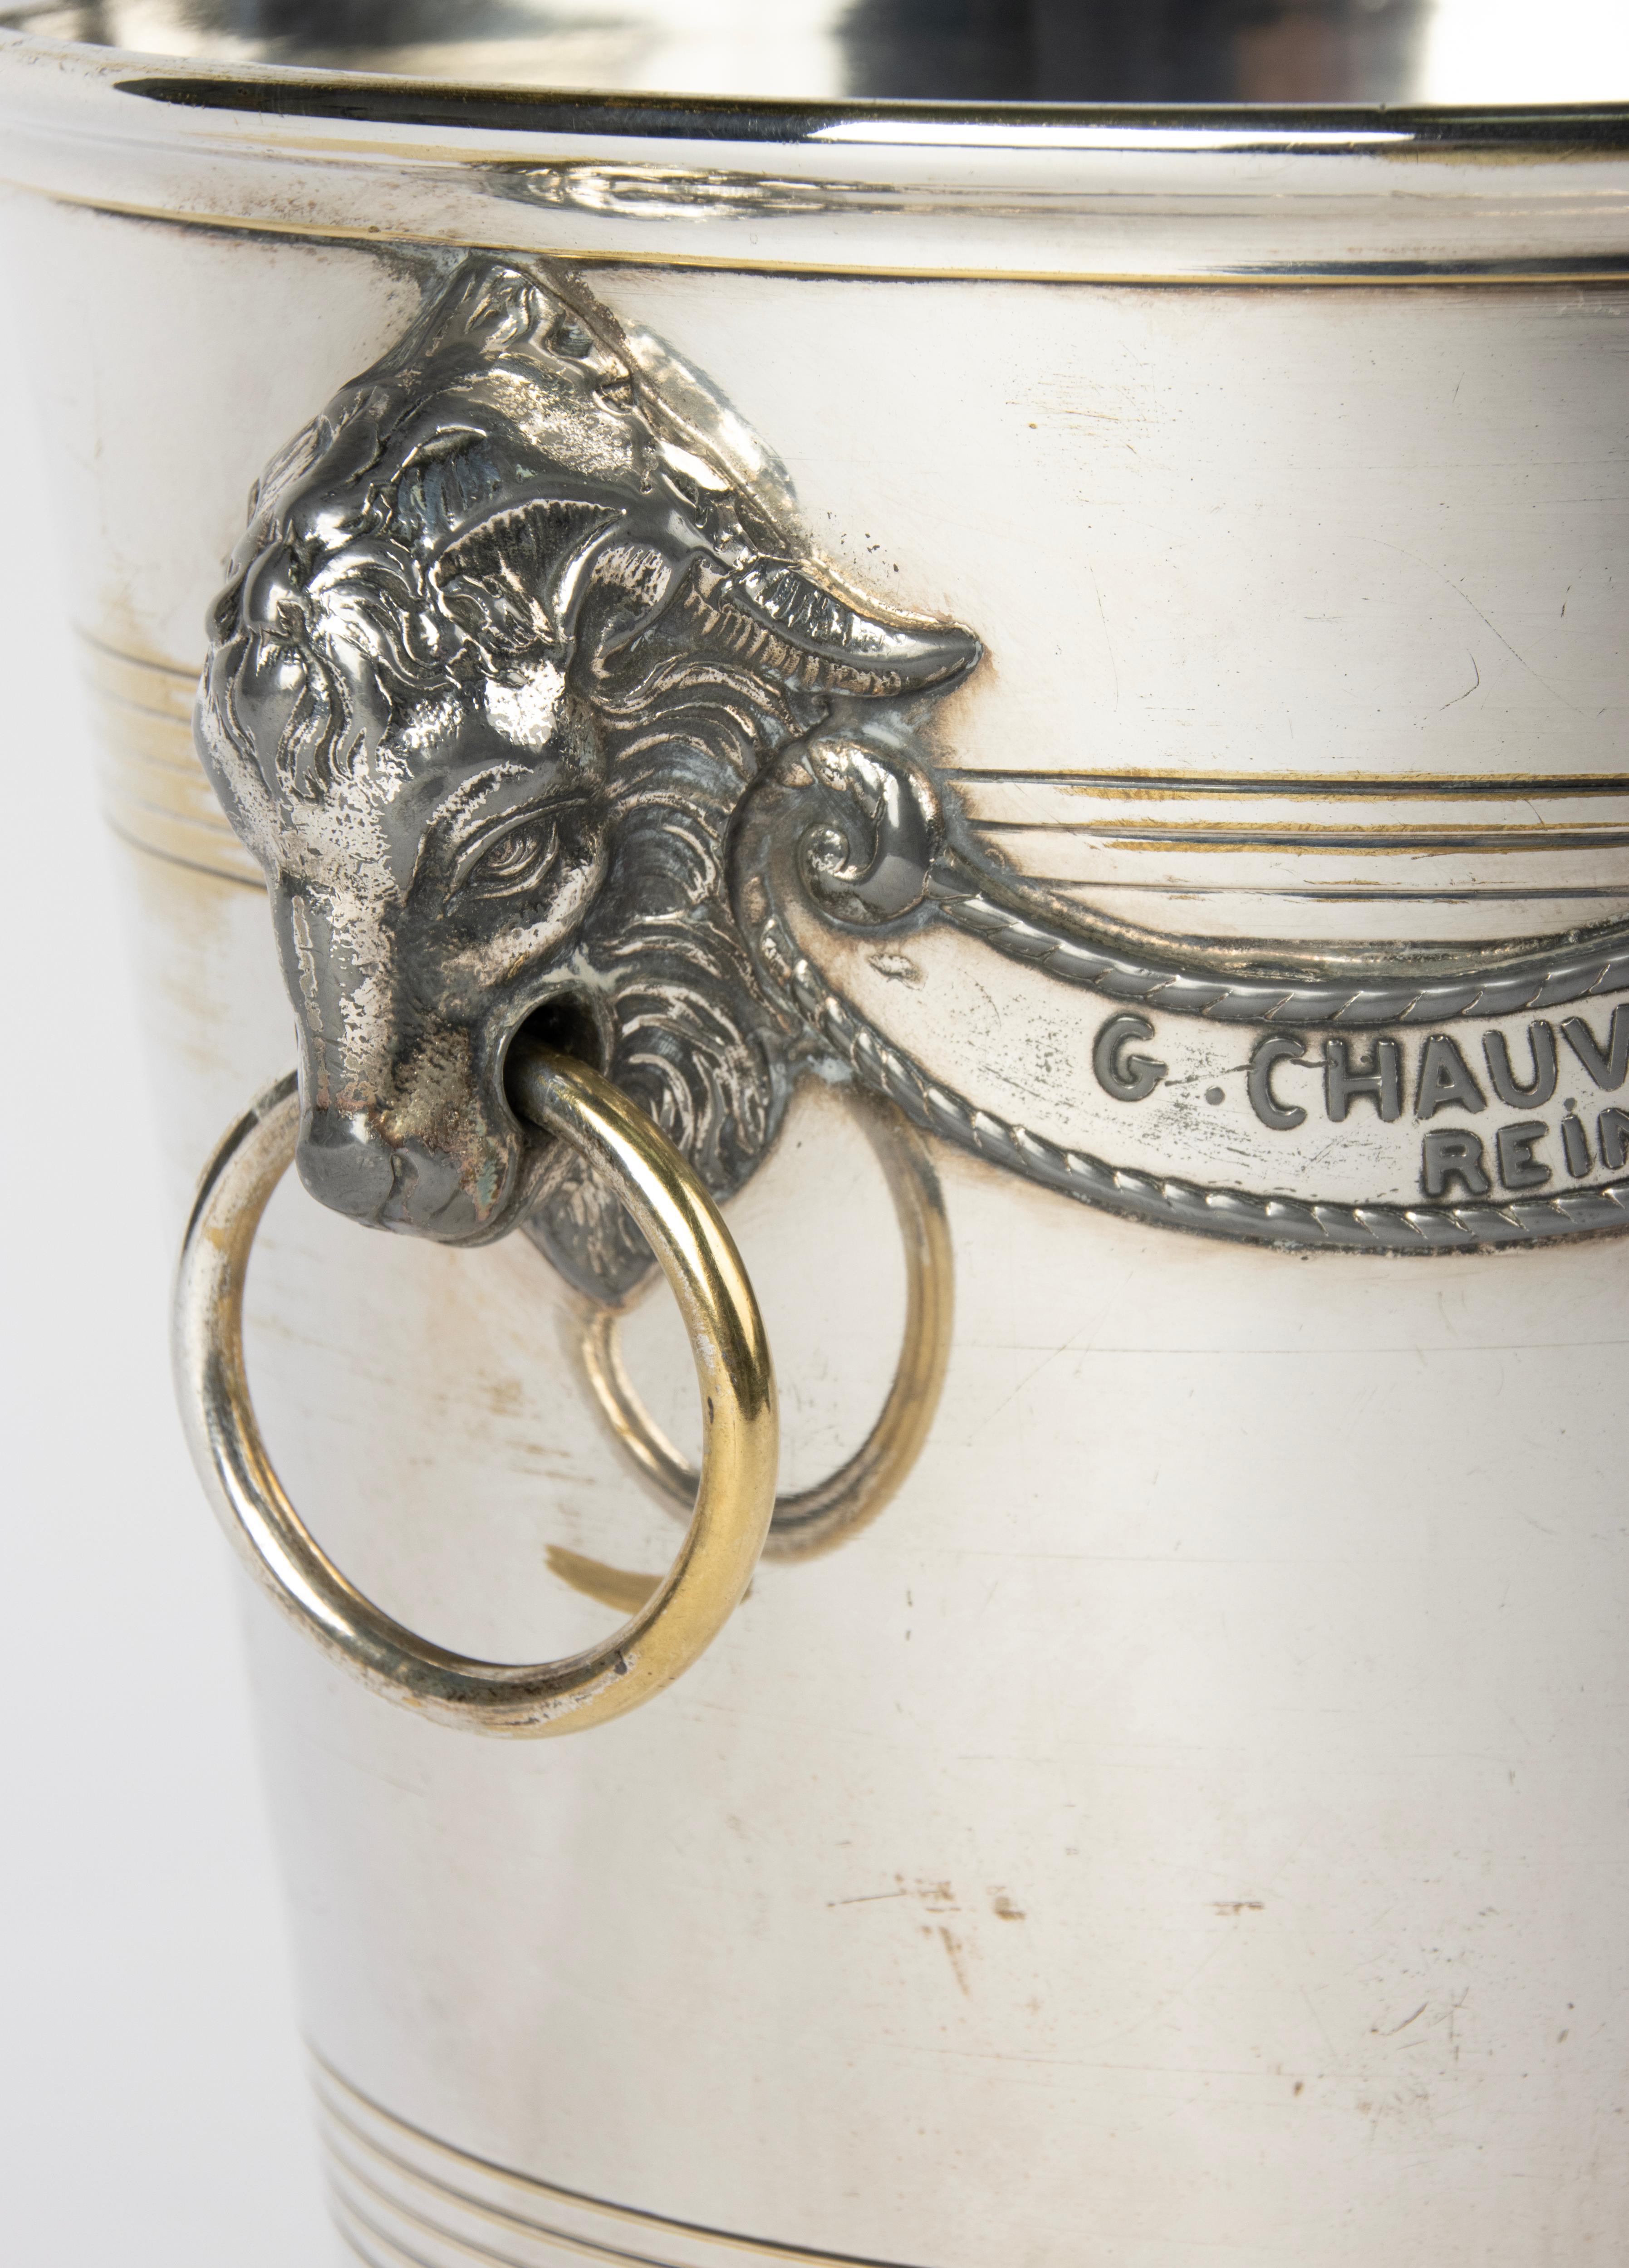 Antique Silver-Plated Champagne Cooler - Agit Paris for Maison G. Chauvet Reims For Sale 7